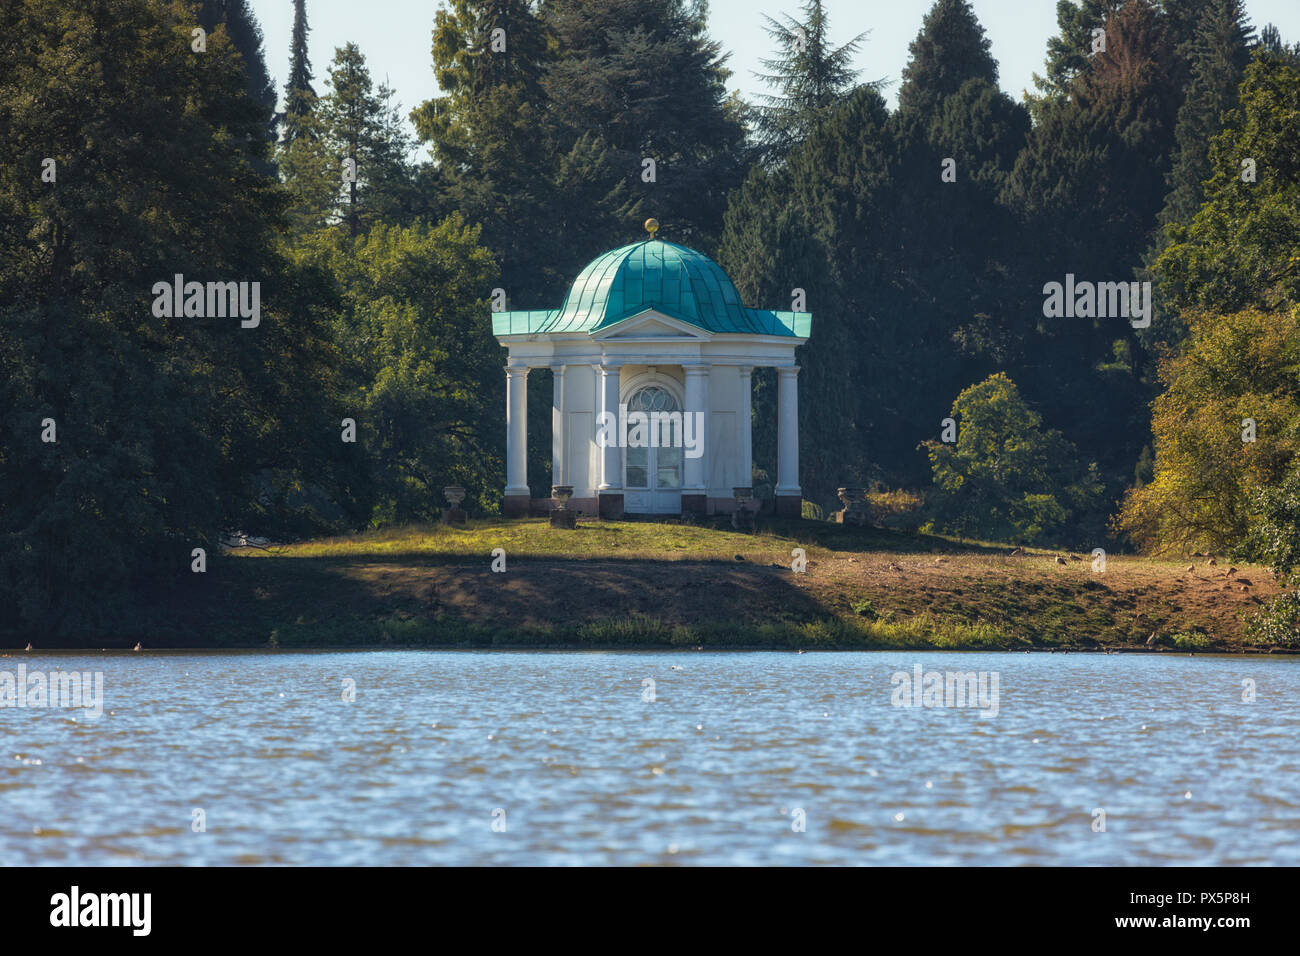 Klassizistischen Pavillon auf der Schwaneninsel (Swan Island) in der  Karlsaue, Kassel, Hessen, Deutschland Stockfotografie - Alamy